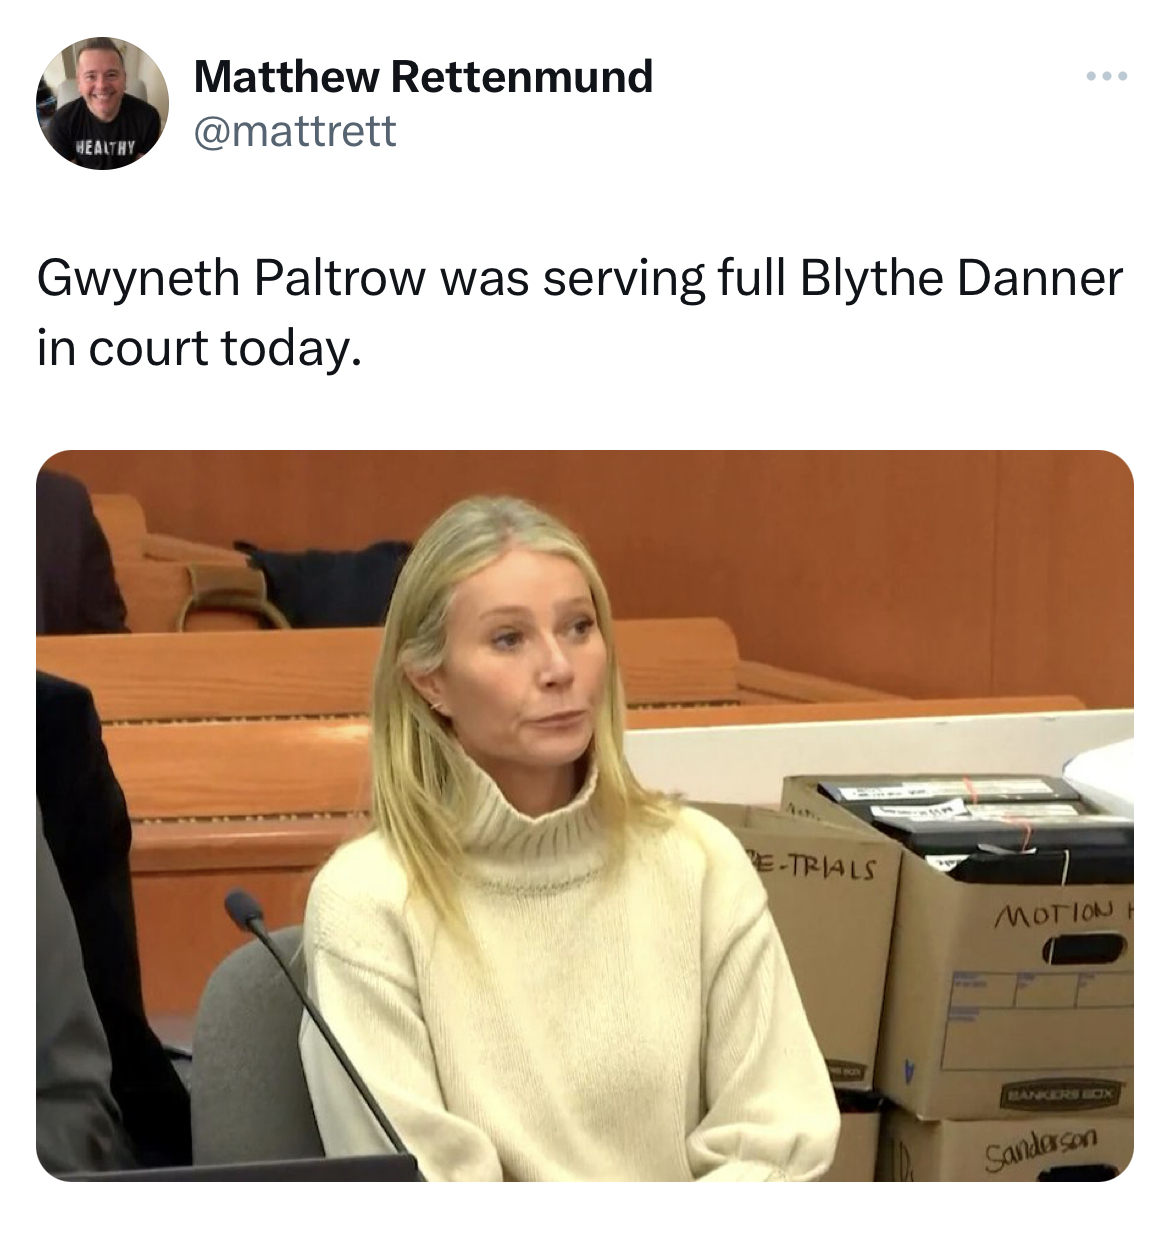 Gwyneth Paltrow Jeffrey Dahmer memes - Gwyneth Paltrow - Healthy Matthew Rettenmund Gwyneth Paltrow was serving full Blythe Danner in court today. ETrials Motion Sandran